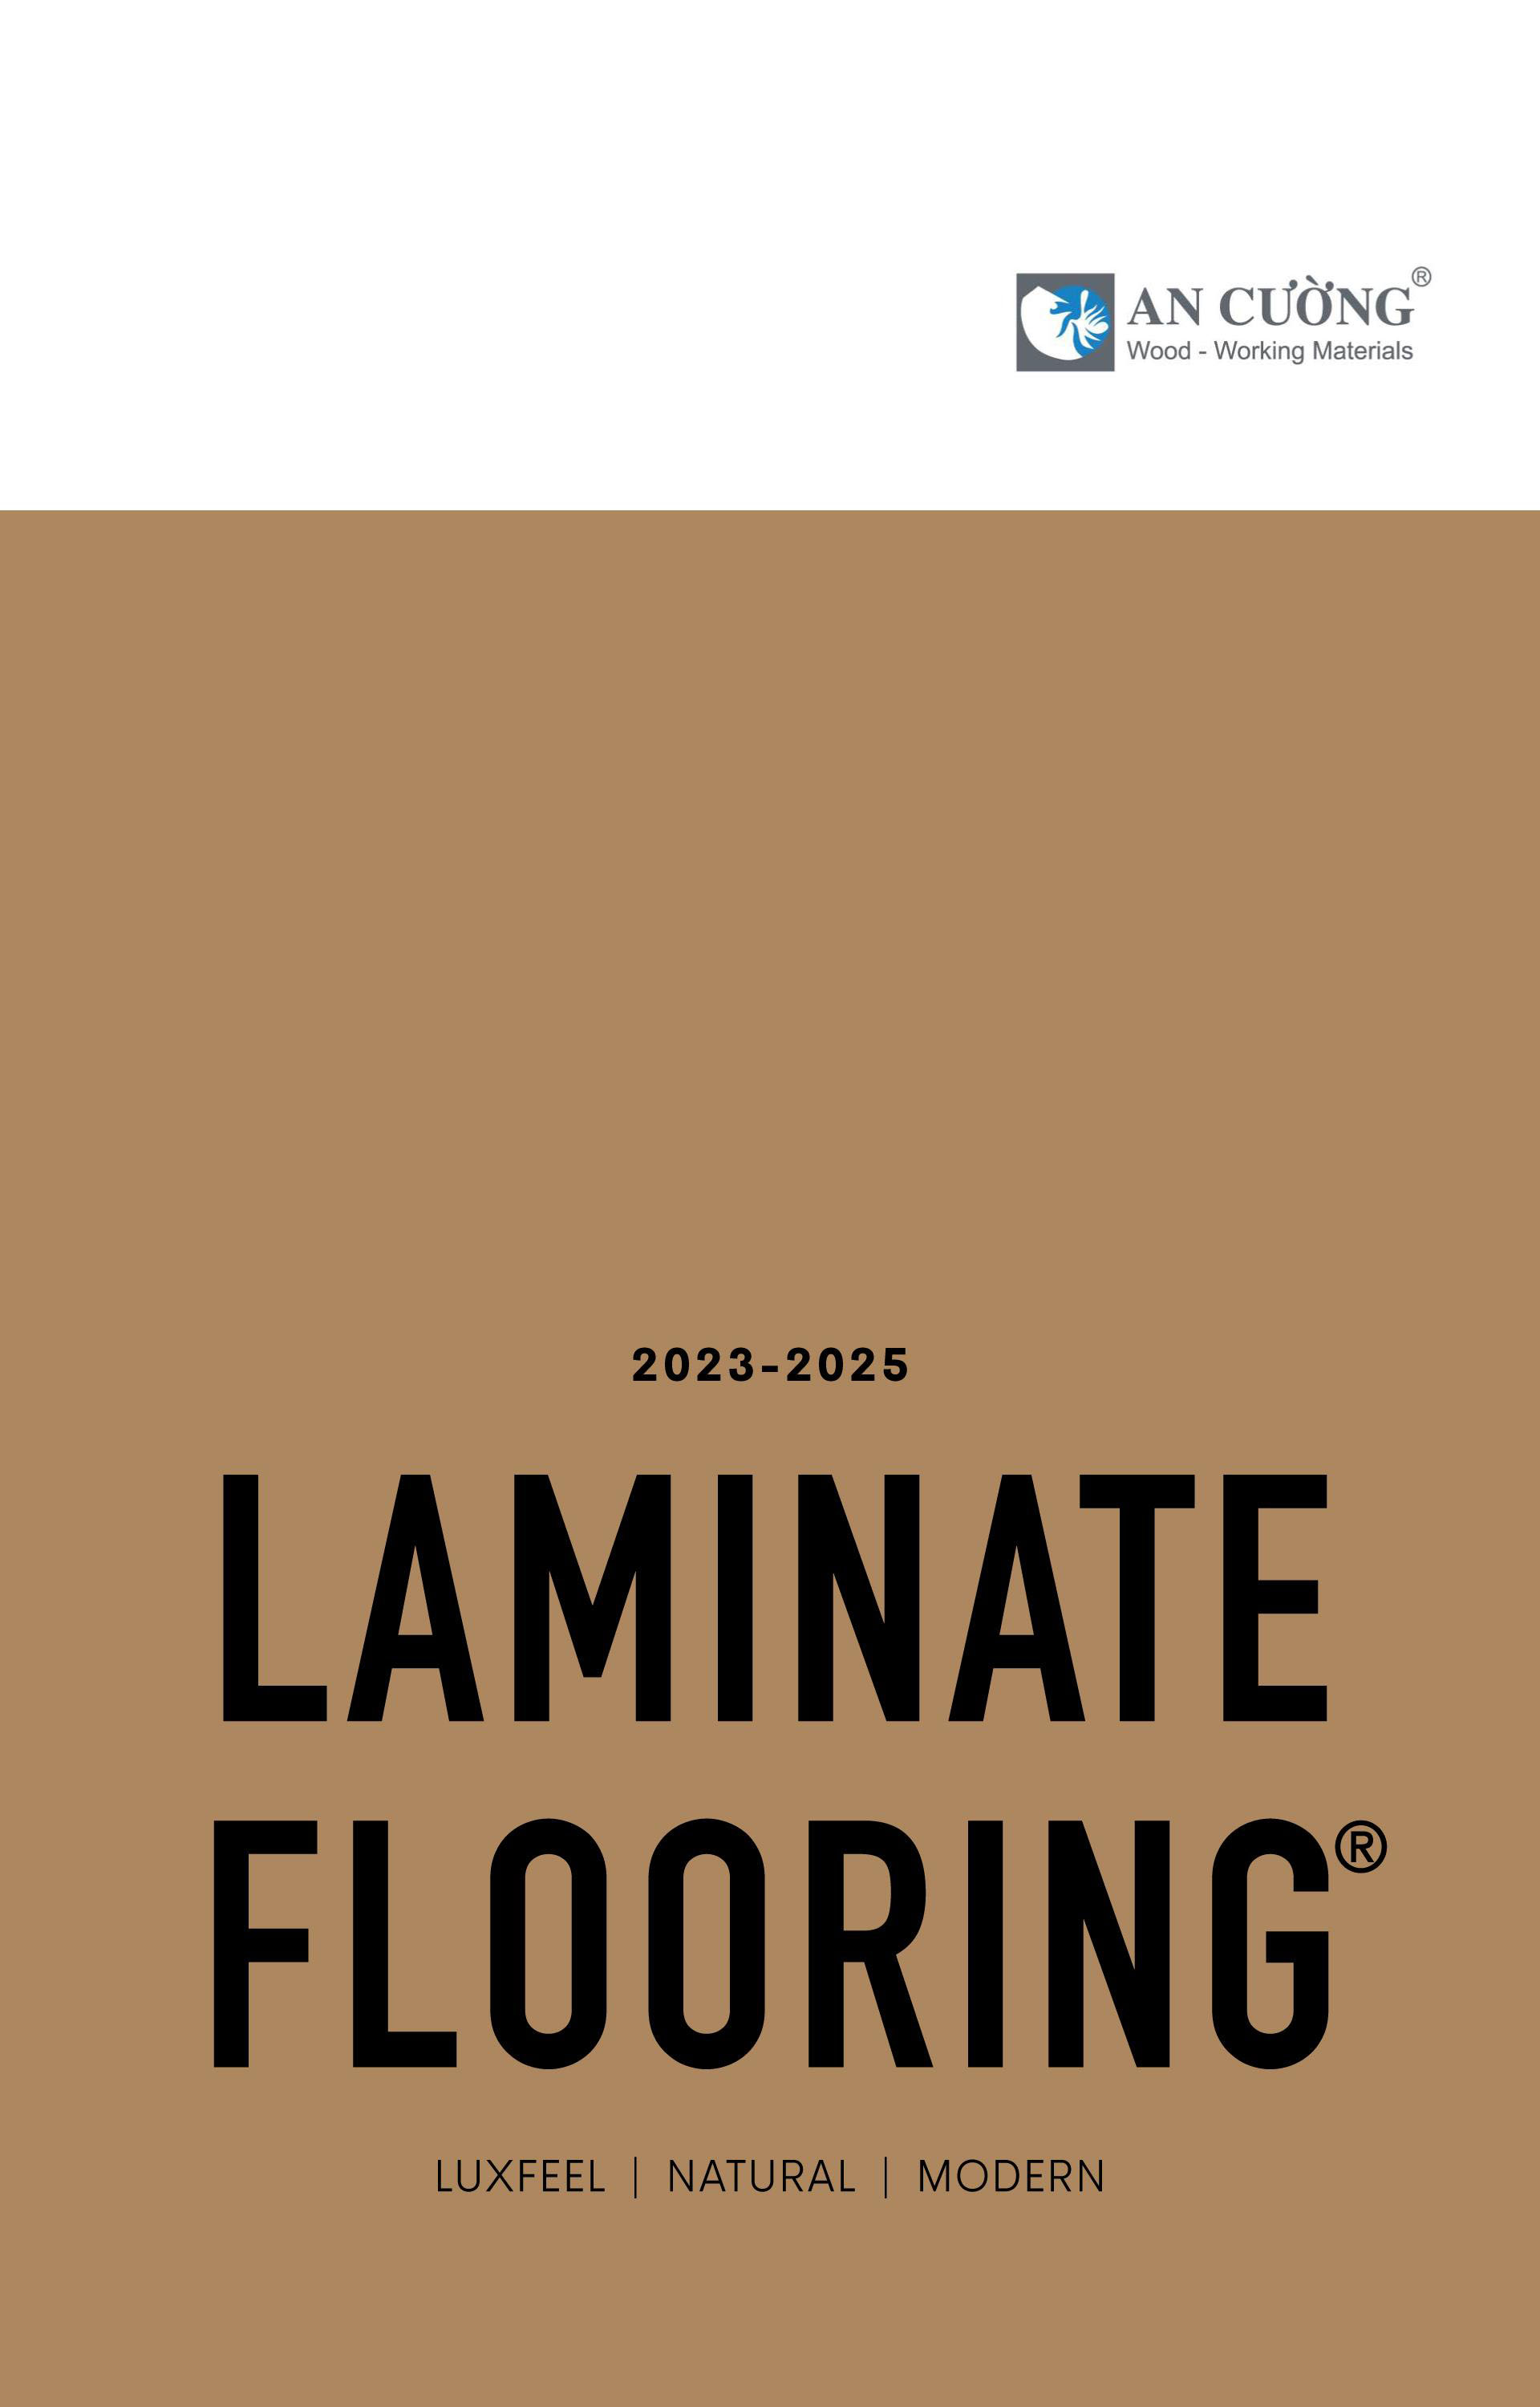 LAMINATE FLOORING